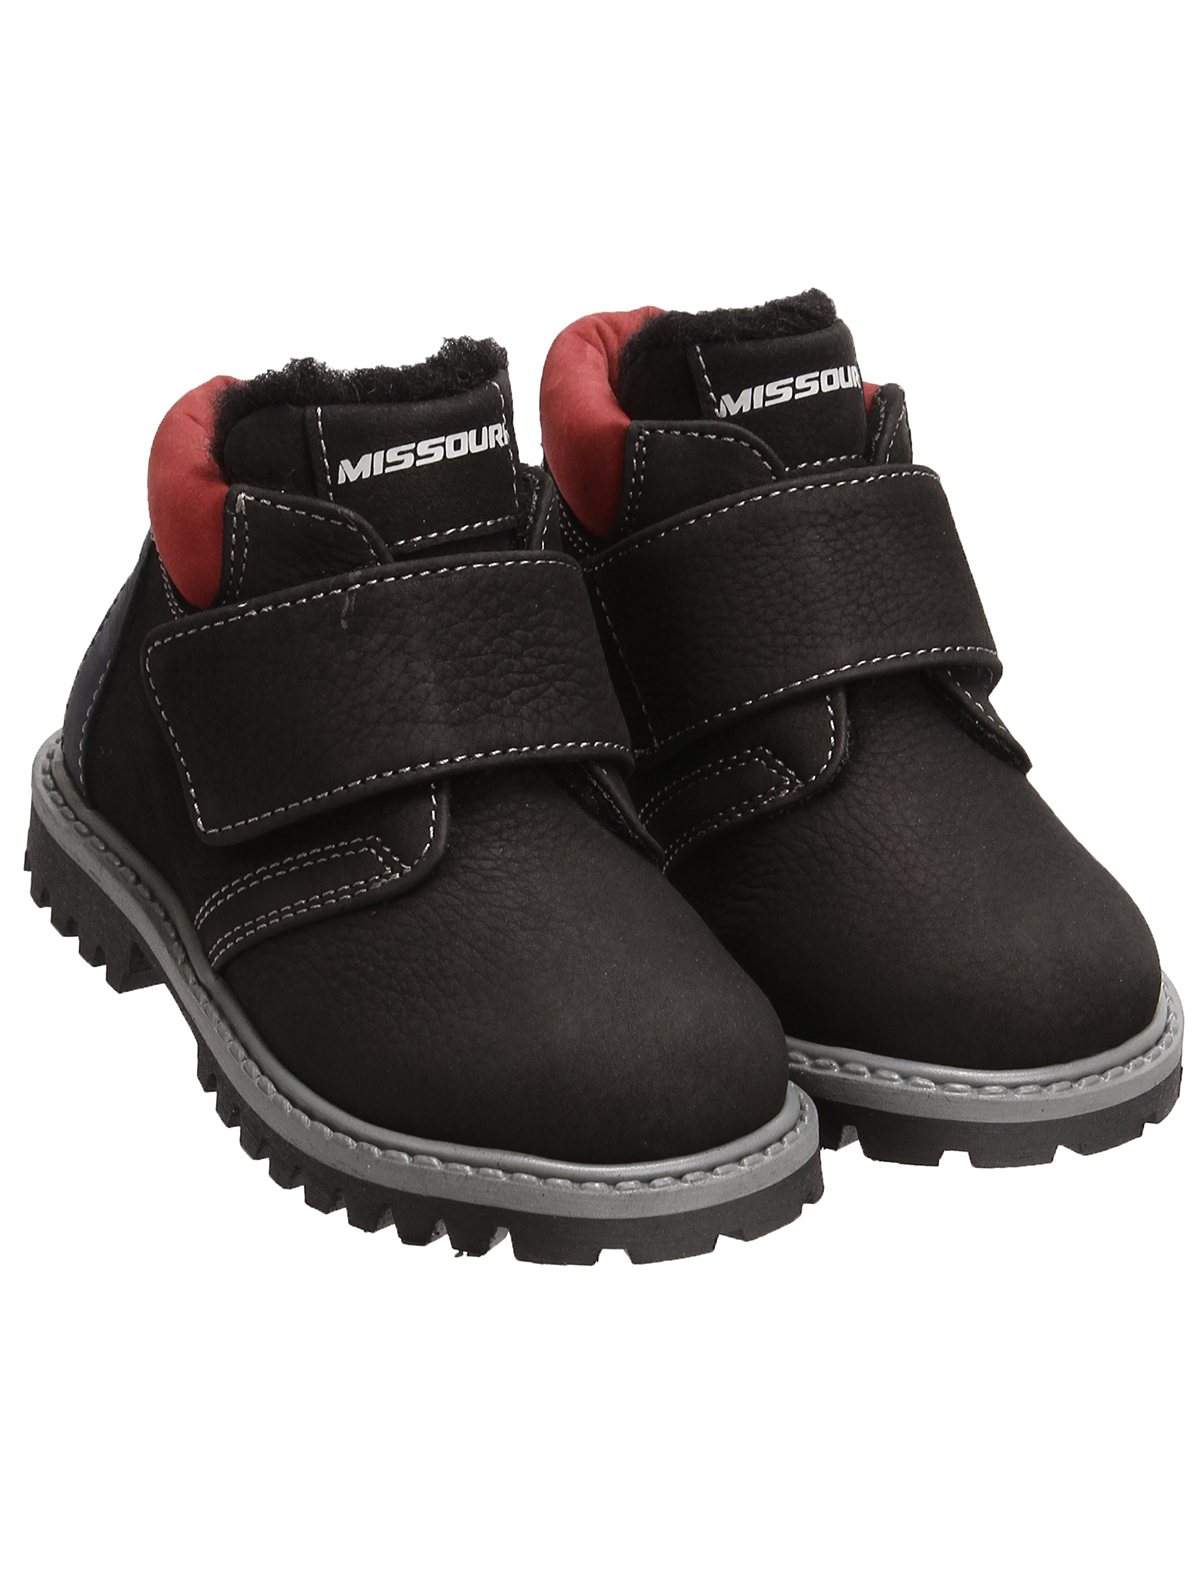 Ботинки Missouri 2480863, цвет черный, размер 26 2034519281351 - фото 1